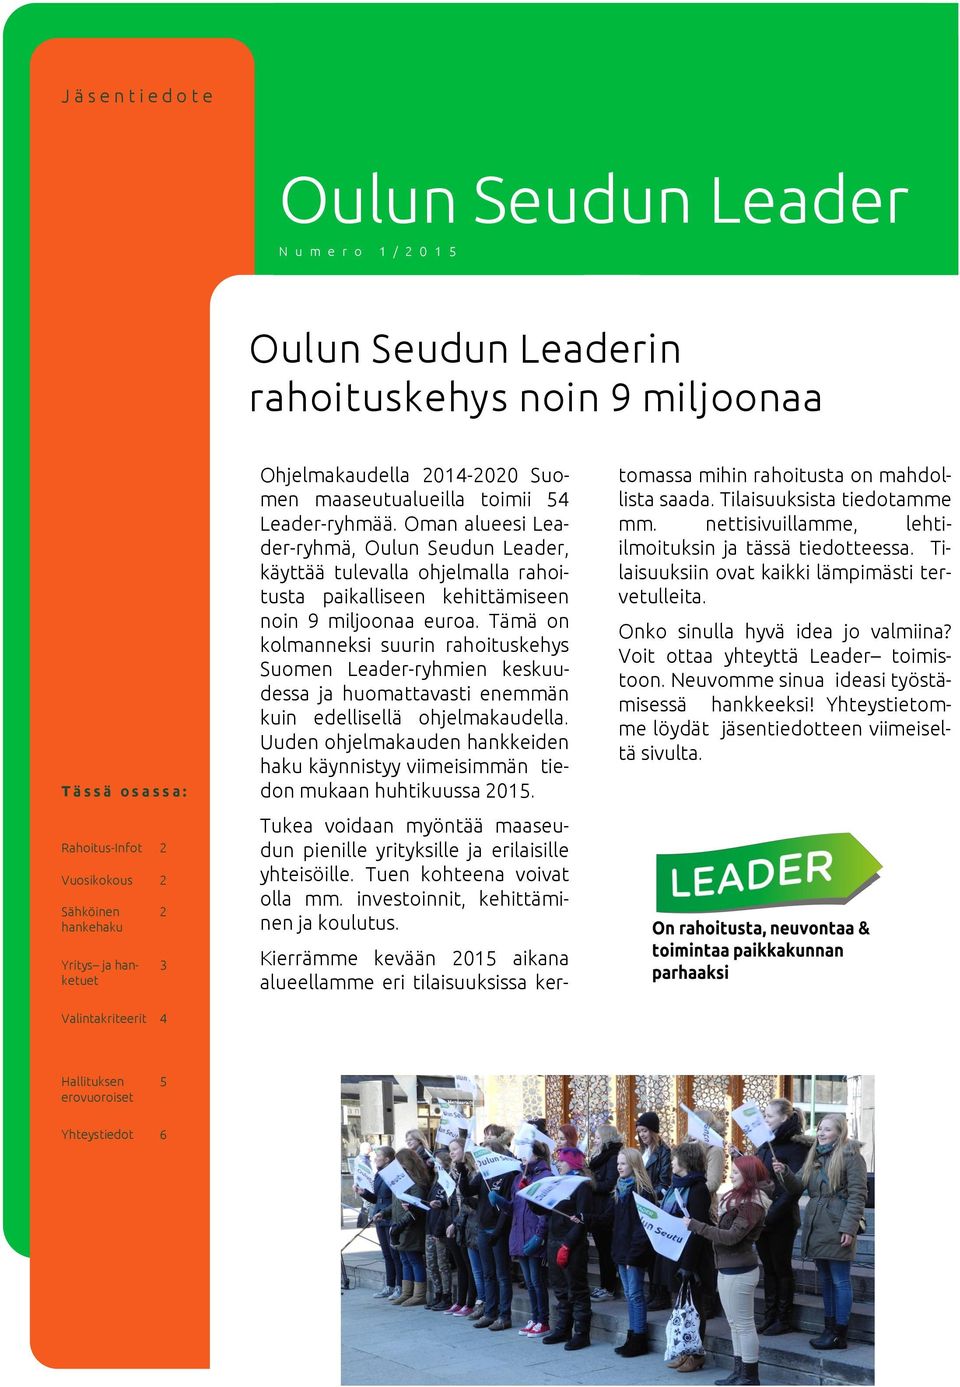 Oman alueesi Leader-ryhmä, Oulun Seudun Leader, käyttää tulevalla ohjelmalla rahoitusta paikalliseen kehittämiseen noin 9 miljoonaa euroa.